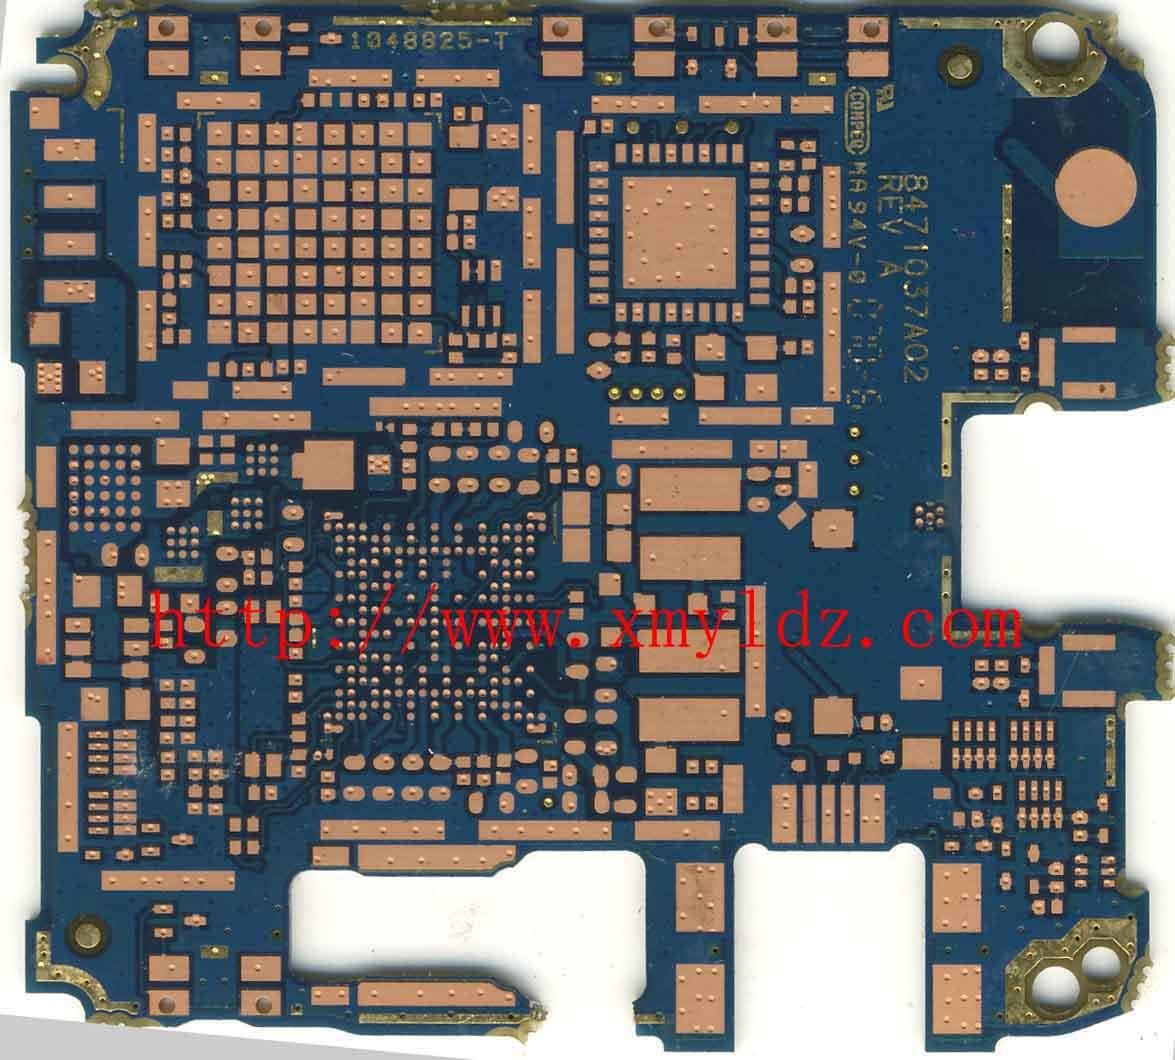   厦门承接PCB抄板 PCB设计 单片机开发 软件开发 PCB板生产 设计 4